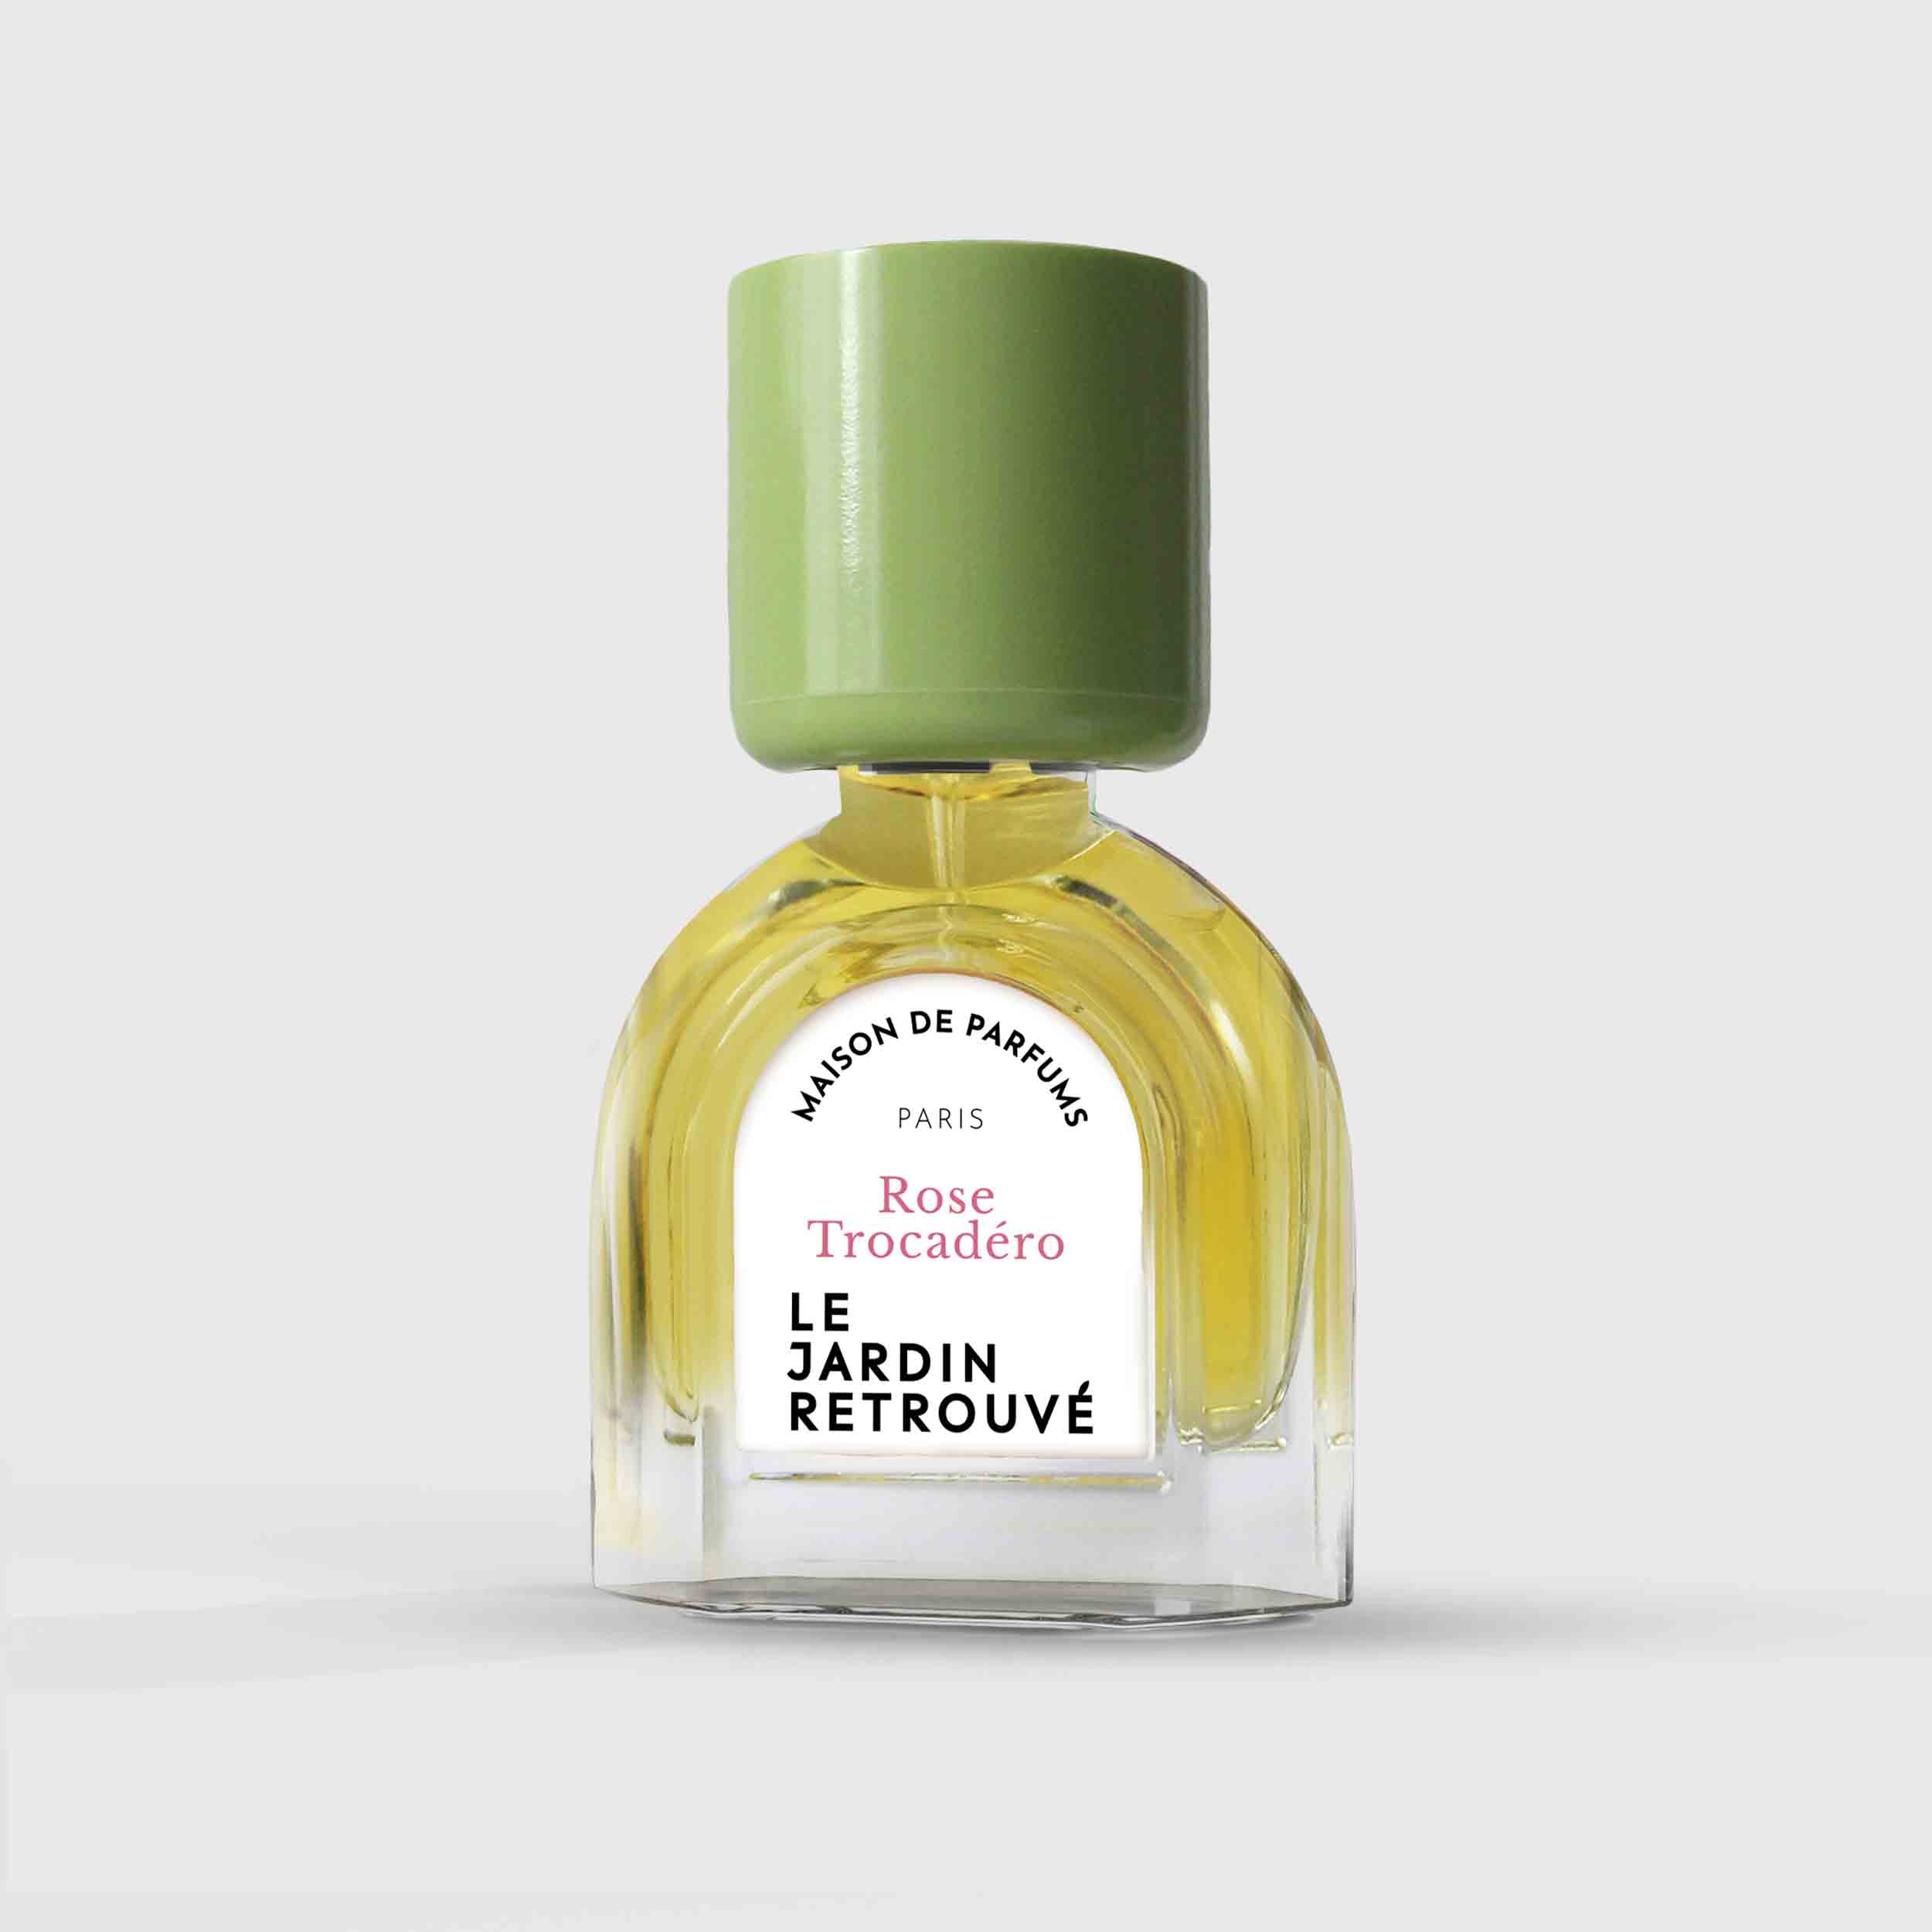 Rose Trocadéro Eau de Parfum 15ml Bottle by Le Jardin Retrouvé